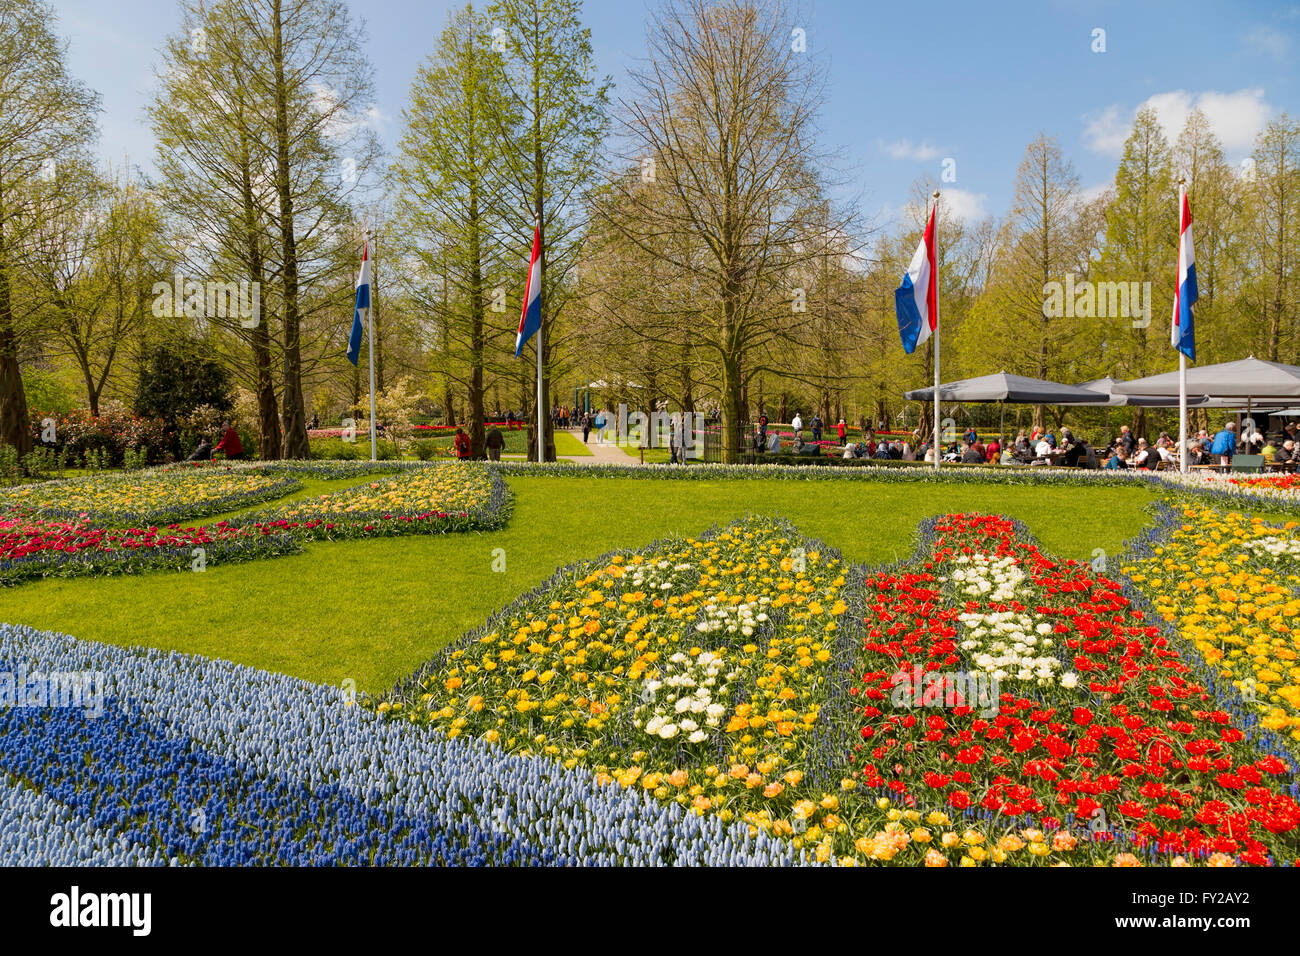 Blume-Mosaik '' The Golden Age'' im Keukenhof, eines der weltweit größten Blumengärten, Lisse, Südholland, Niederlande. Stockfoto